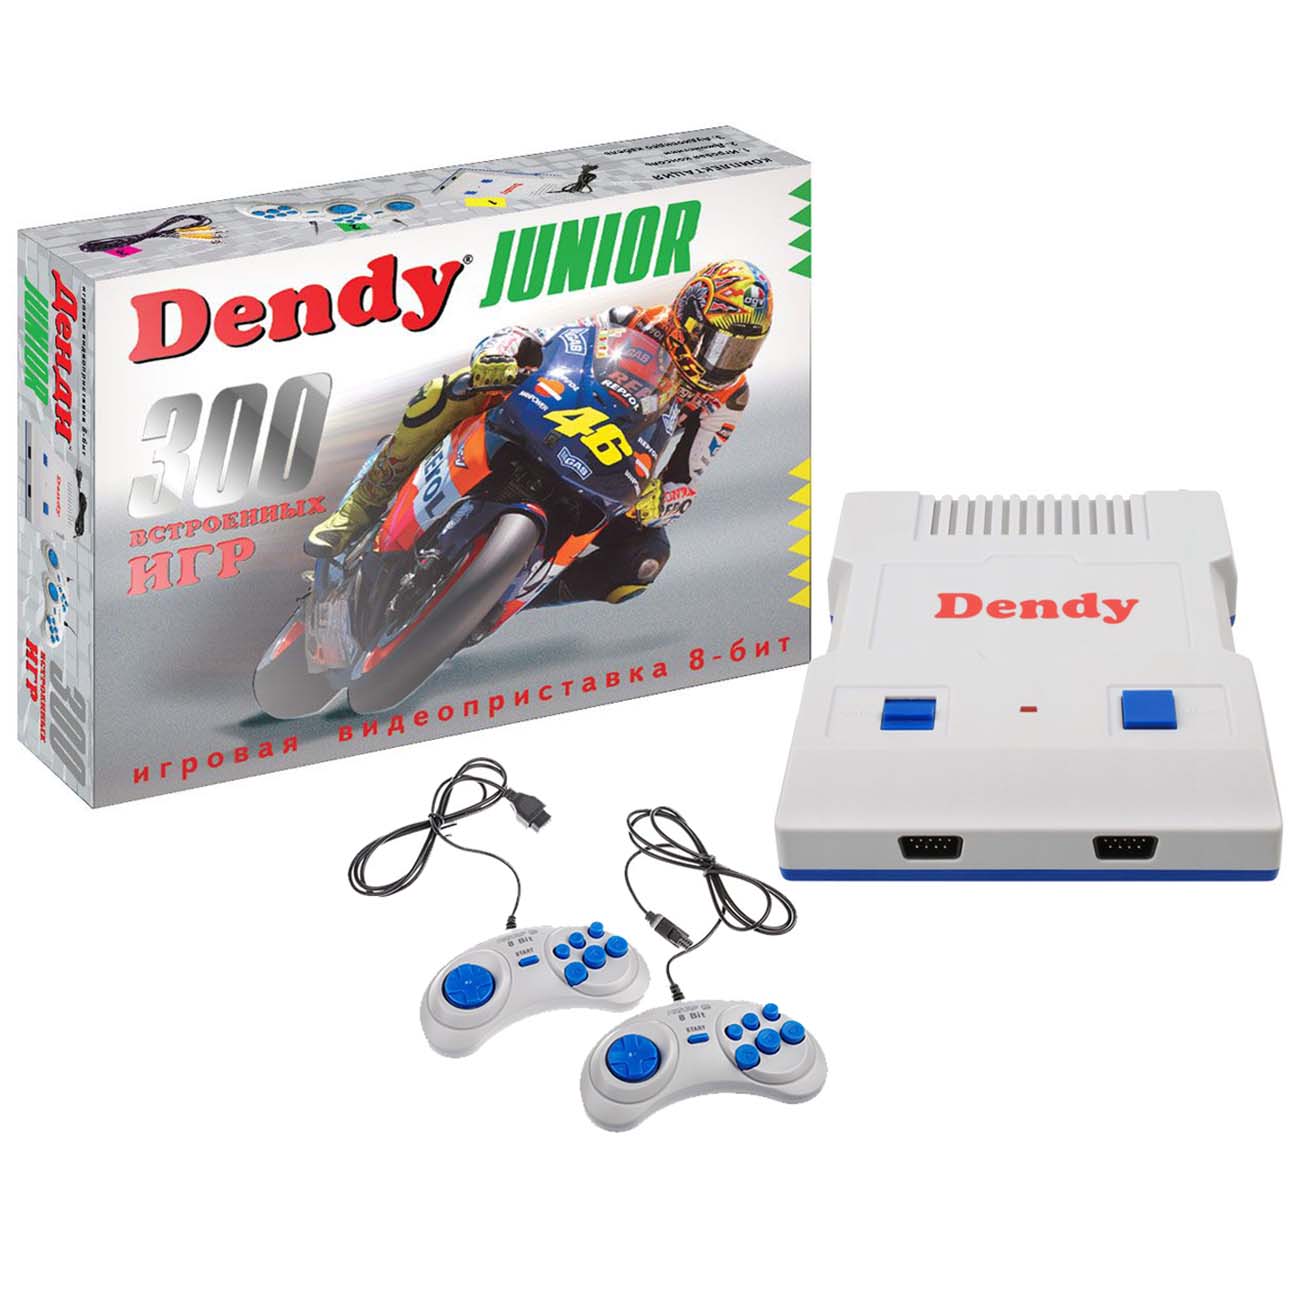 Приставка 300 игр. Игровая консоль Dendy Junior - [300 игр]. Dendy Junior + 300 игр. Денди Джуниор 2 коробка. Приставка Денди GS 800.